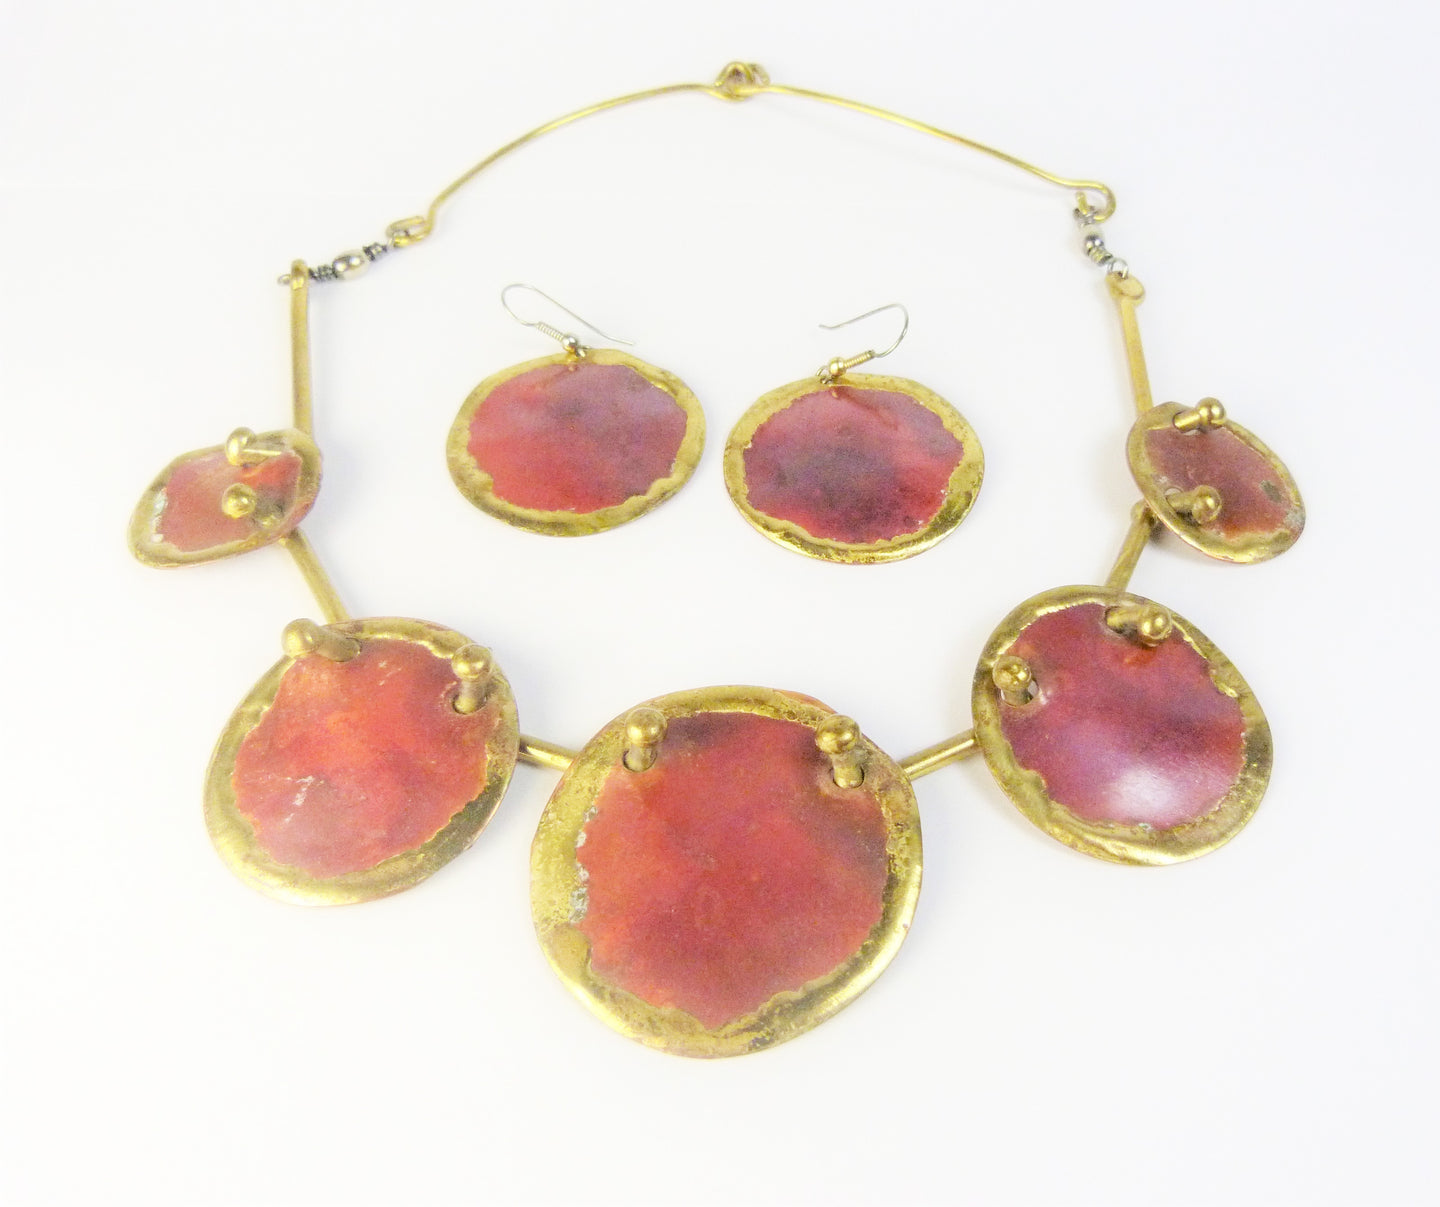 Vintage Modernist Brutalist Copper & Brass Red Enamel Hammered Disc Necklace & Earrings